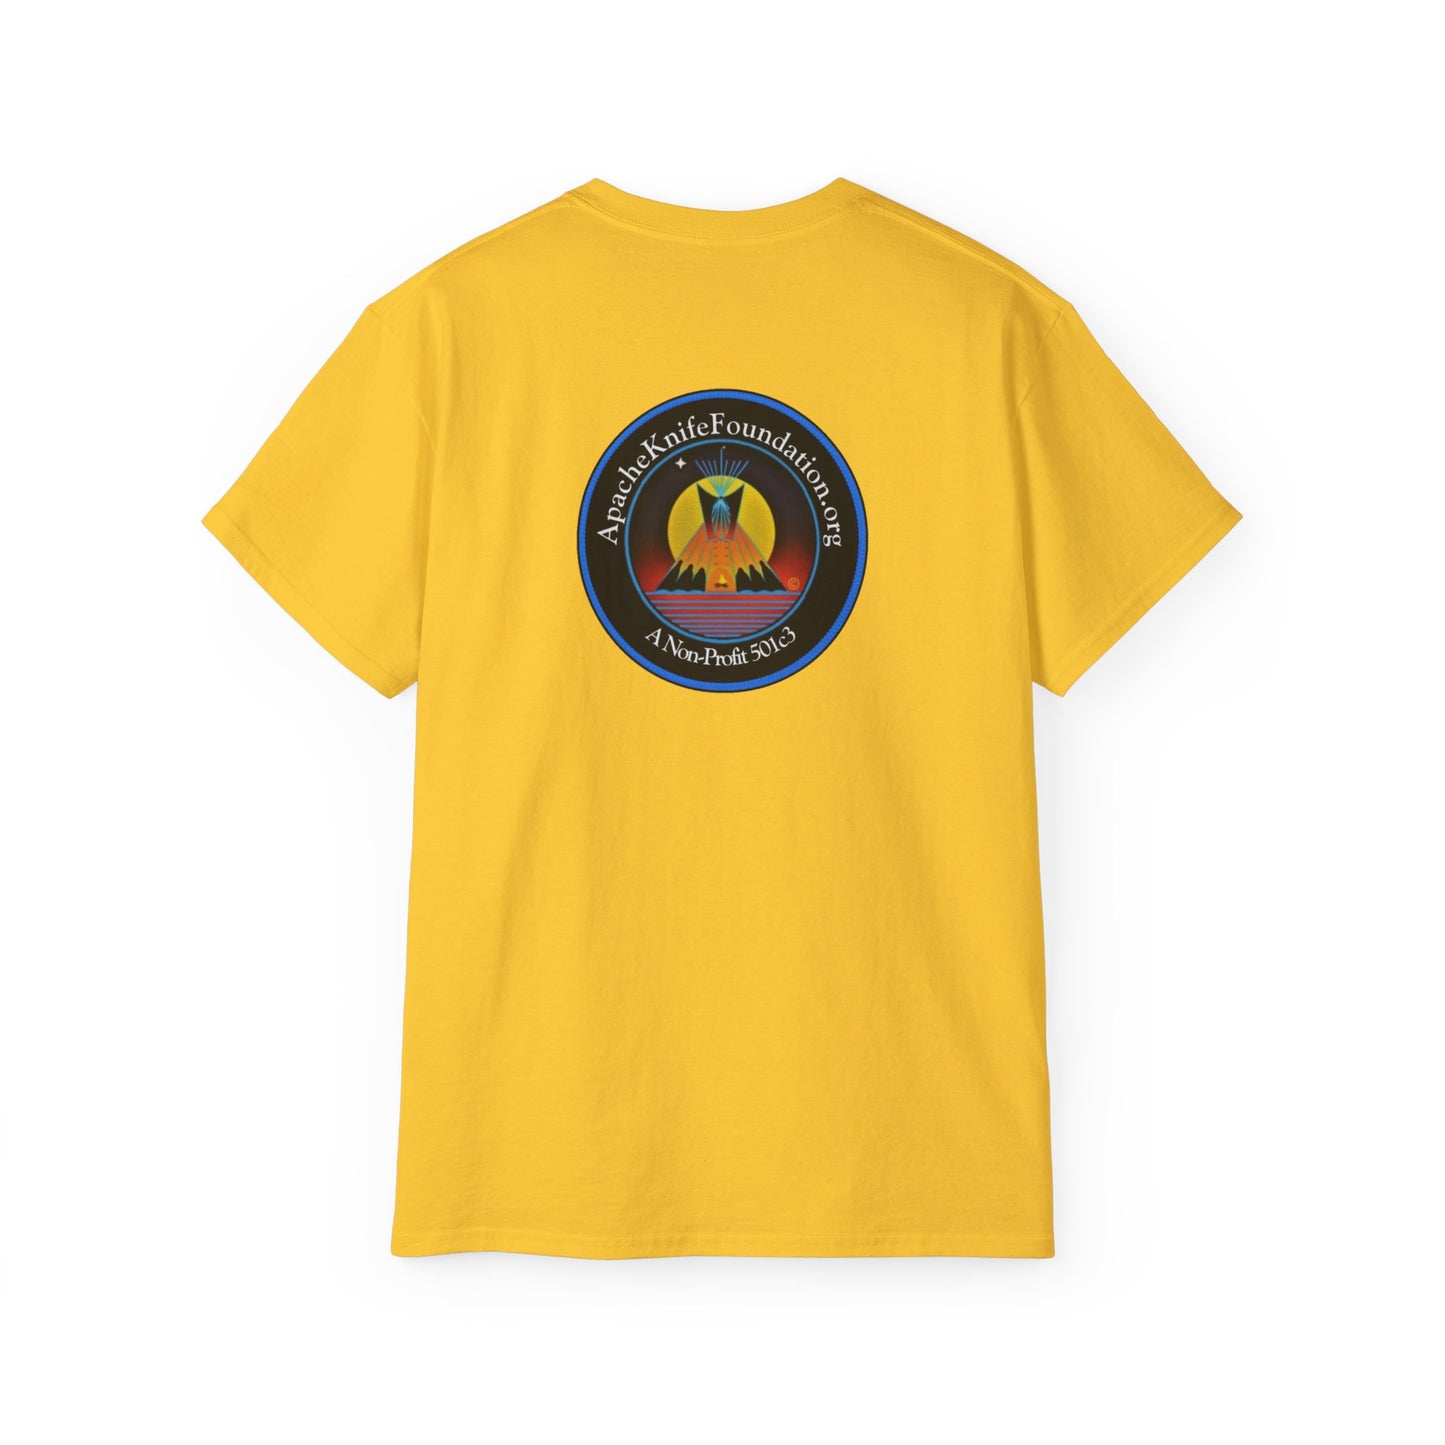 Camisa Apache Knife Foundation, organização sem fins lucrativos, nativa americana (pedido especial)